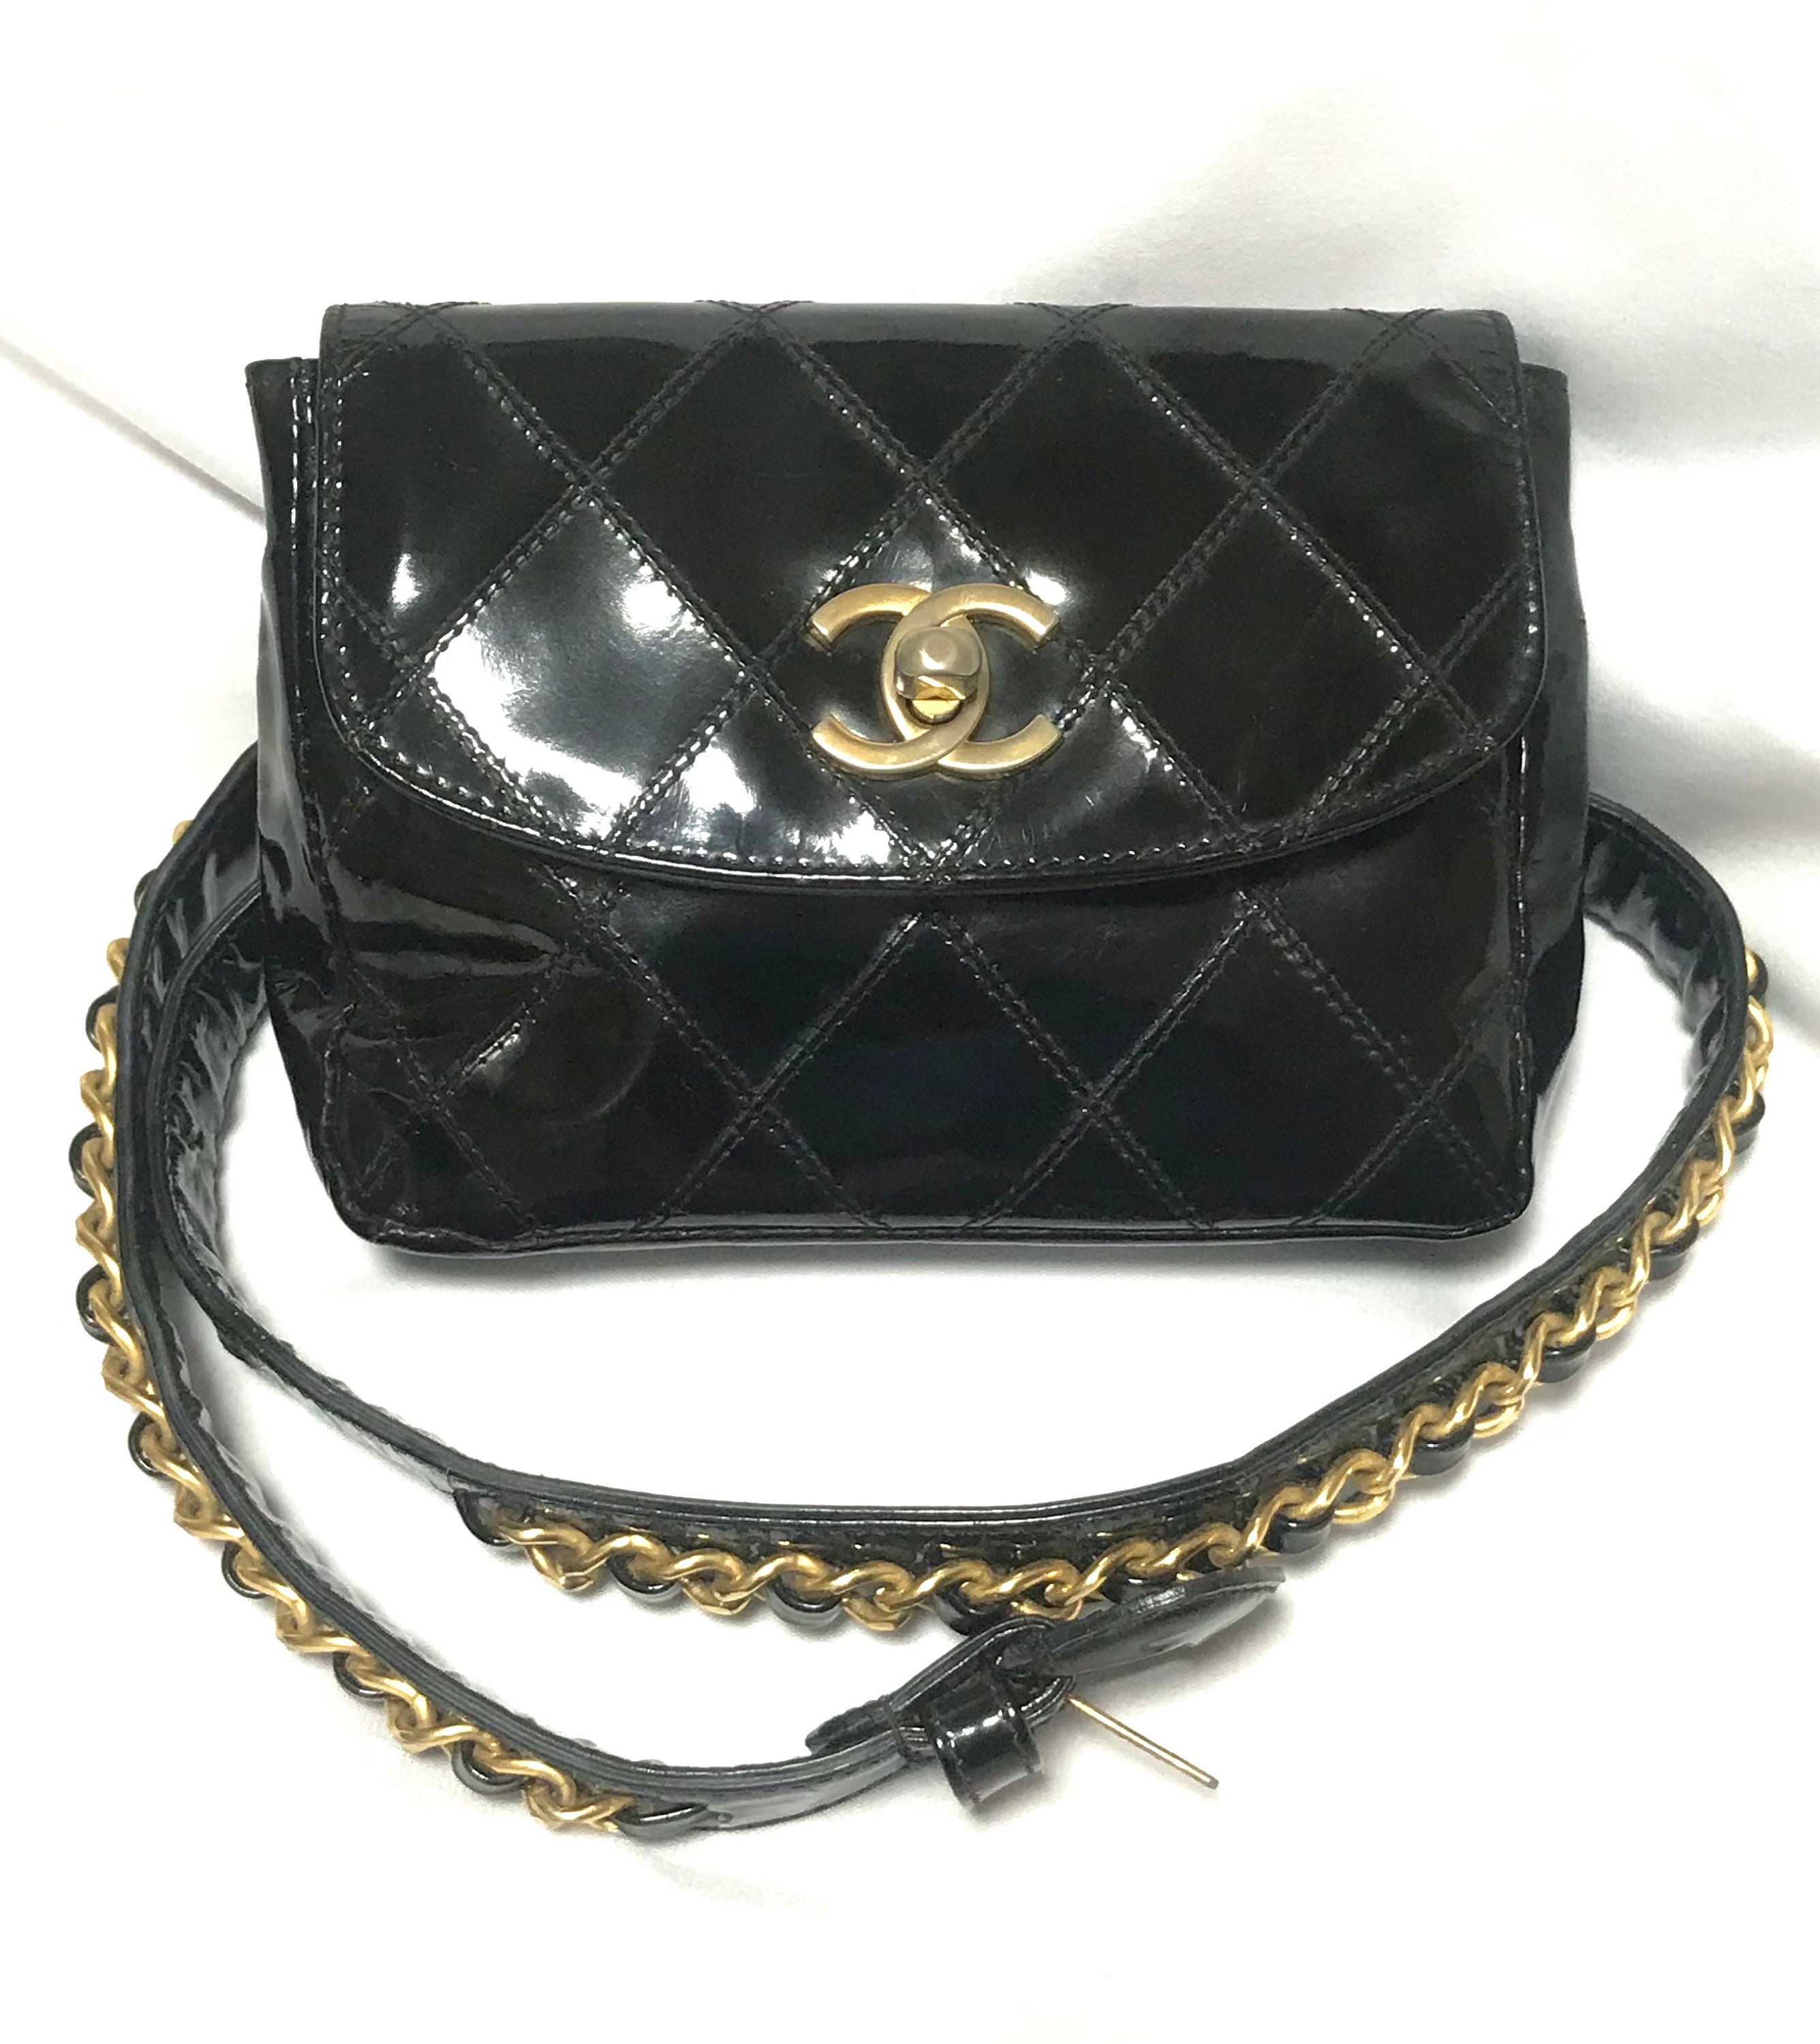 Chanel Vintage Clutch Bag 